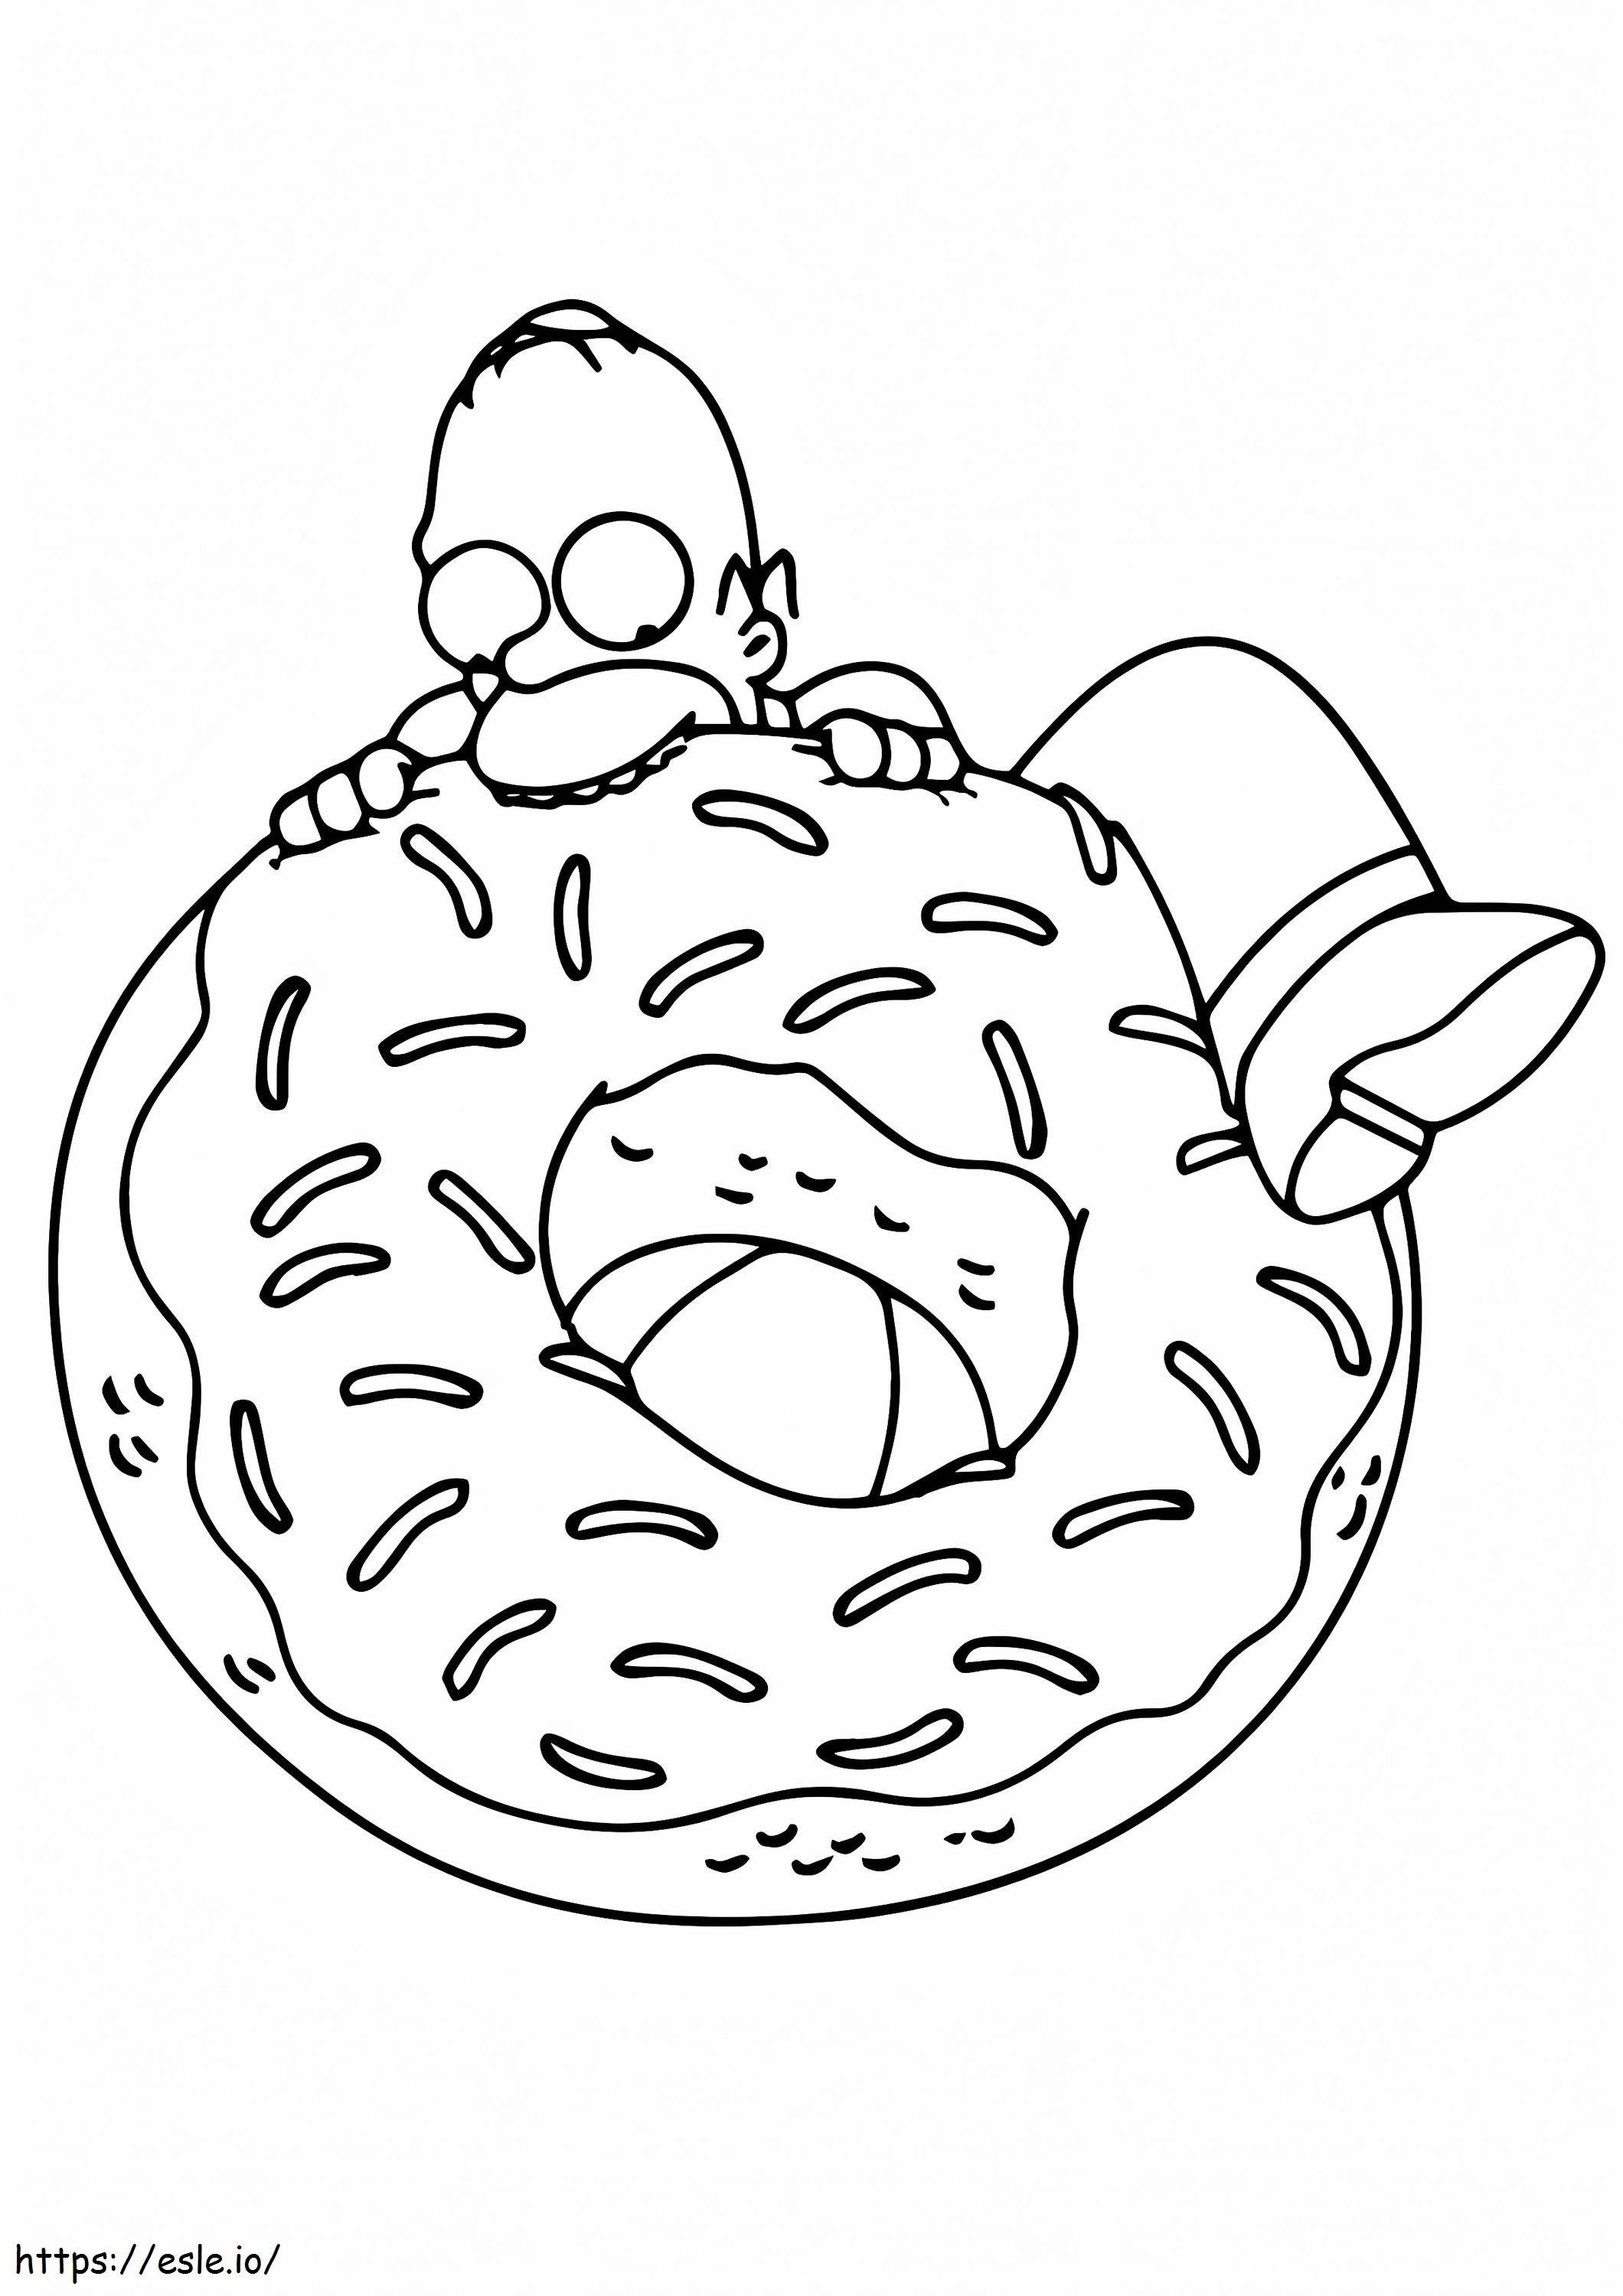 Coloriage  Bart Simpson prenant une bouchée A4 à imprimer dessin